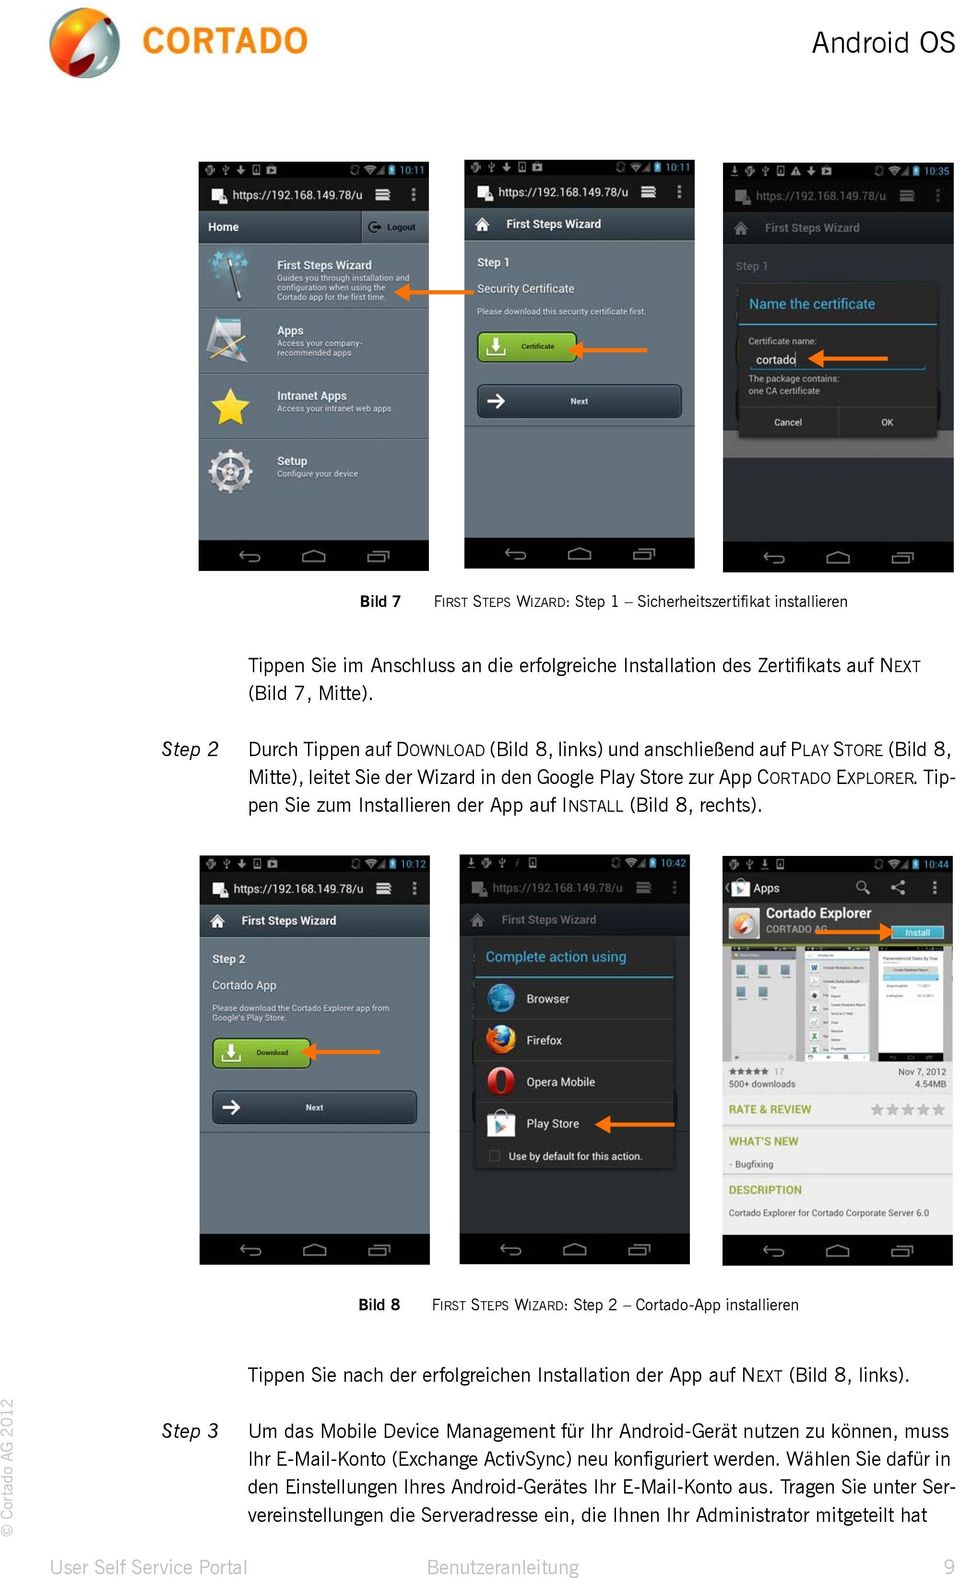 Tippen Sie zum Installieren der App auf INSTALL (Bild 8, rechts).